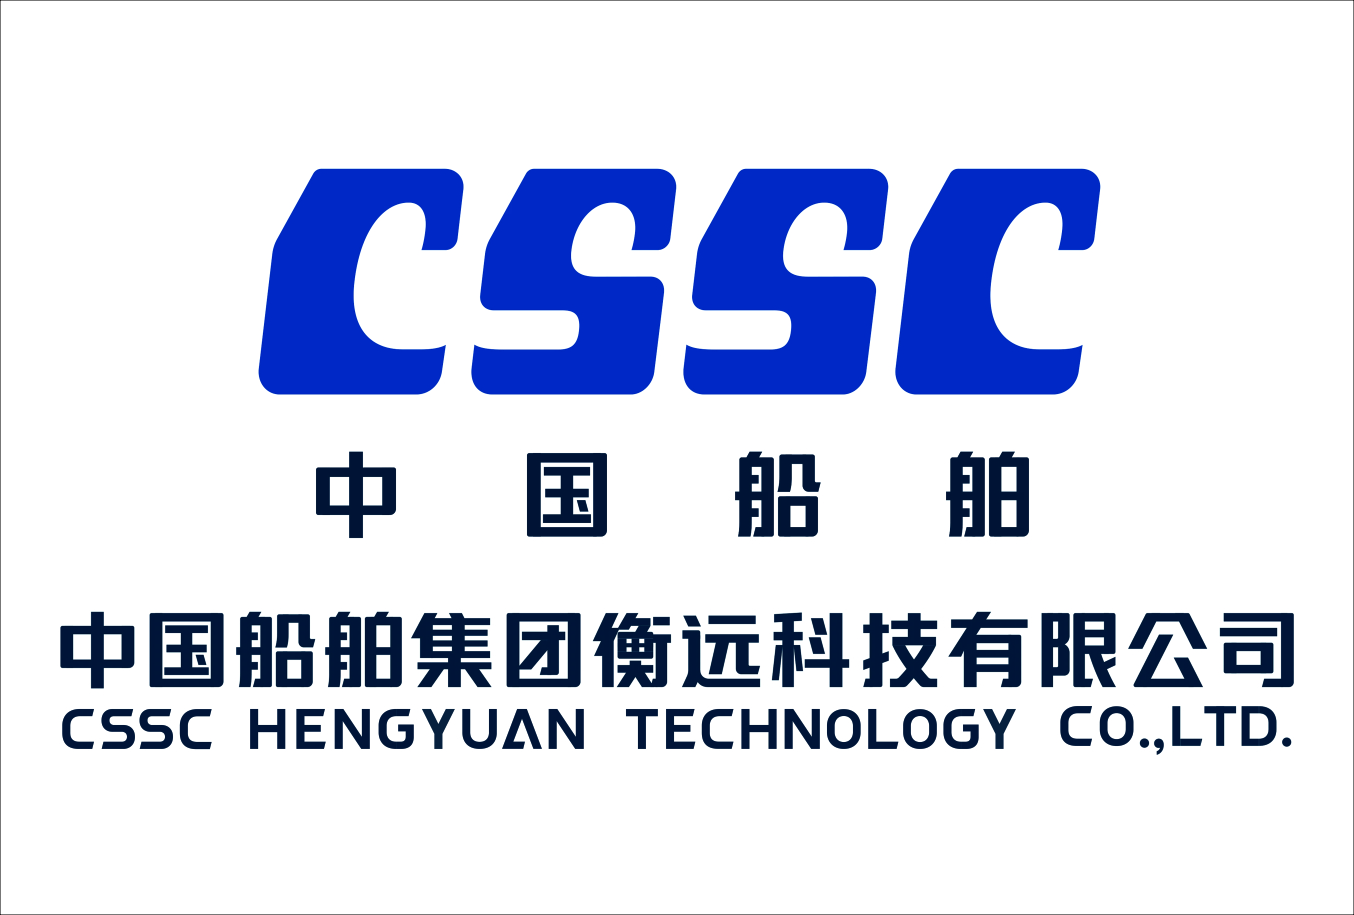 CSSC Hengyuan Technology Co., Ltd